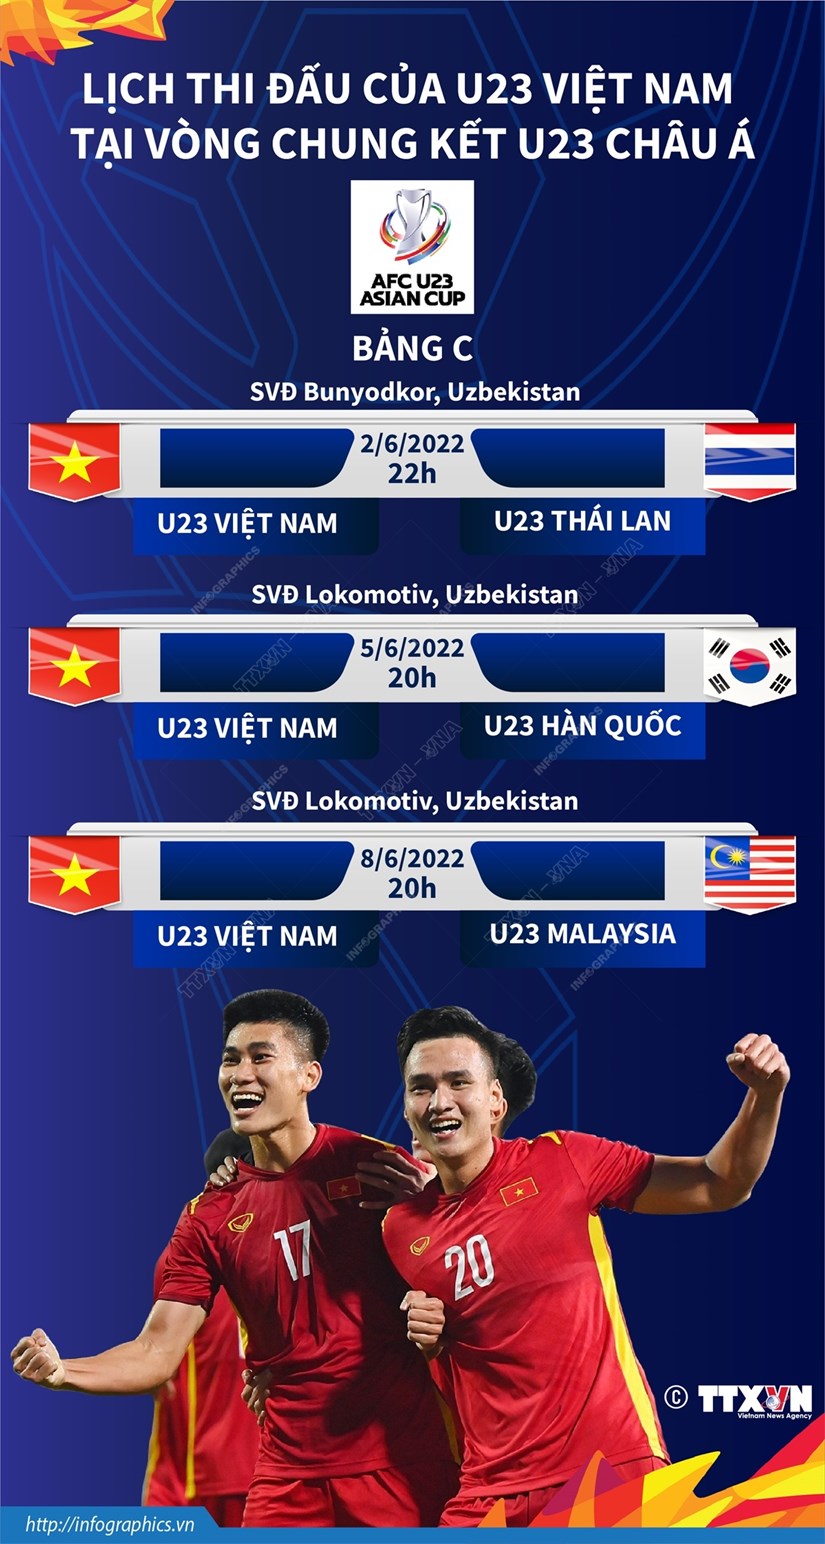 Lich thi dau cua U23 Viet Nam tai Vong chung ket U23 chau A hinh anh 1